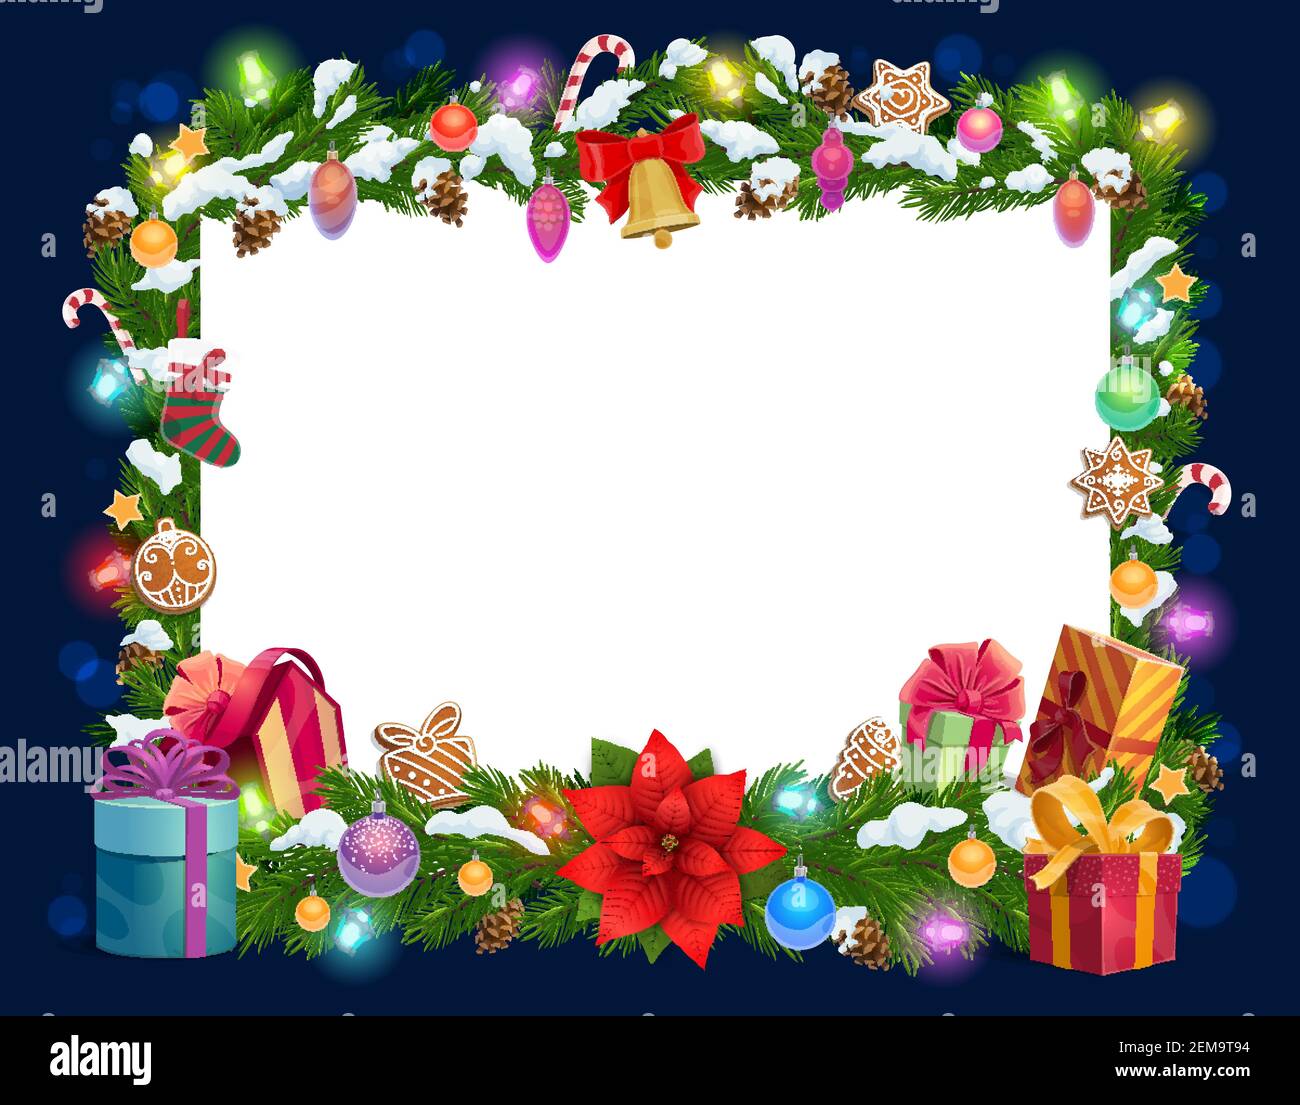 Cartolina bianca di Natale in cornice di decorazioni di natale del vettore. Le luci dell'albero di Natale e gli ornamenti invernali di festa di Capodanno, la campana dorata e il regalo b Illustrazione Vettoriale